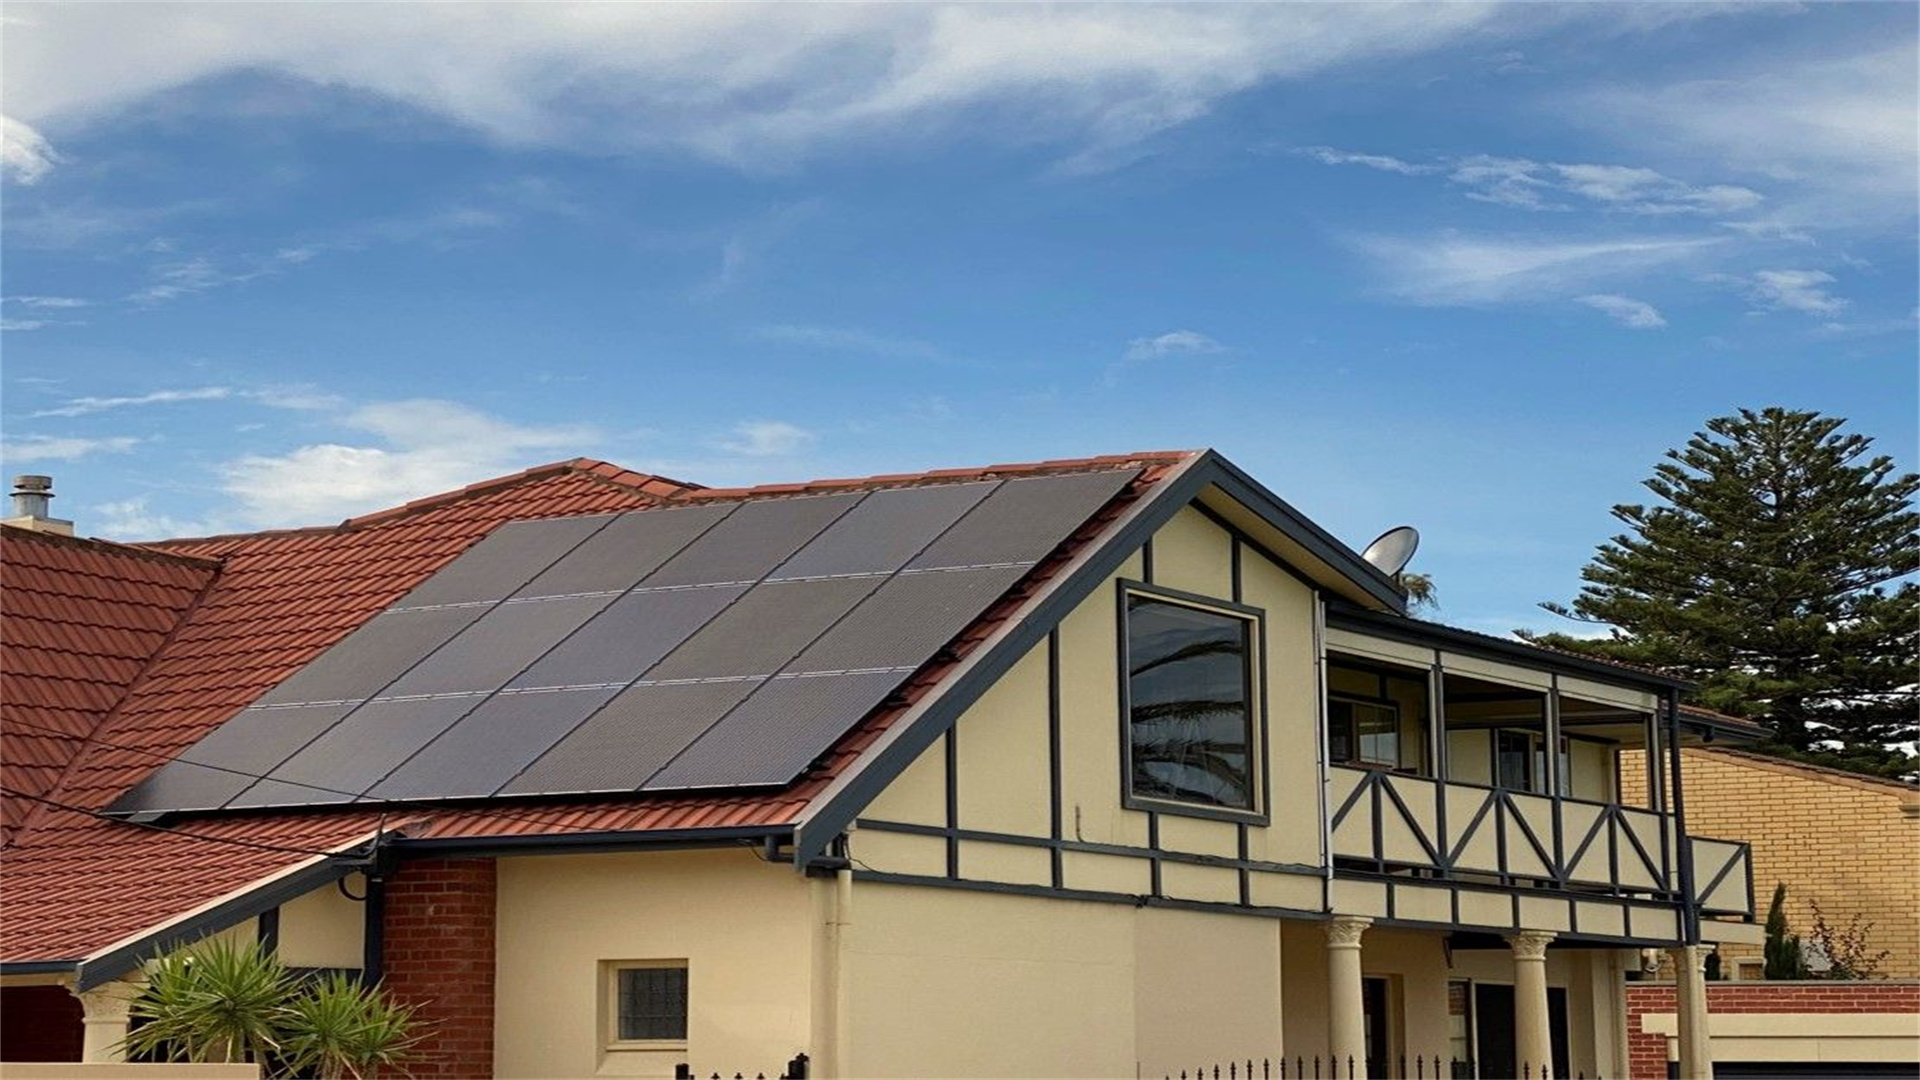 Аделаида, Австралия - Проект распределения электроэнергии на крыше дома мощностью 9,9 кВт